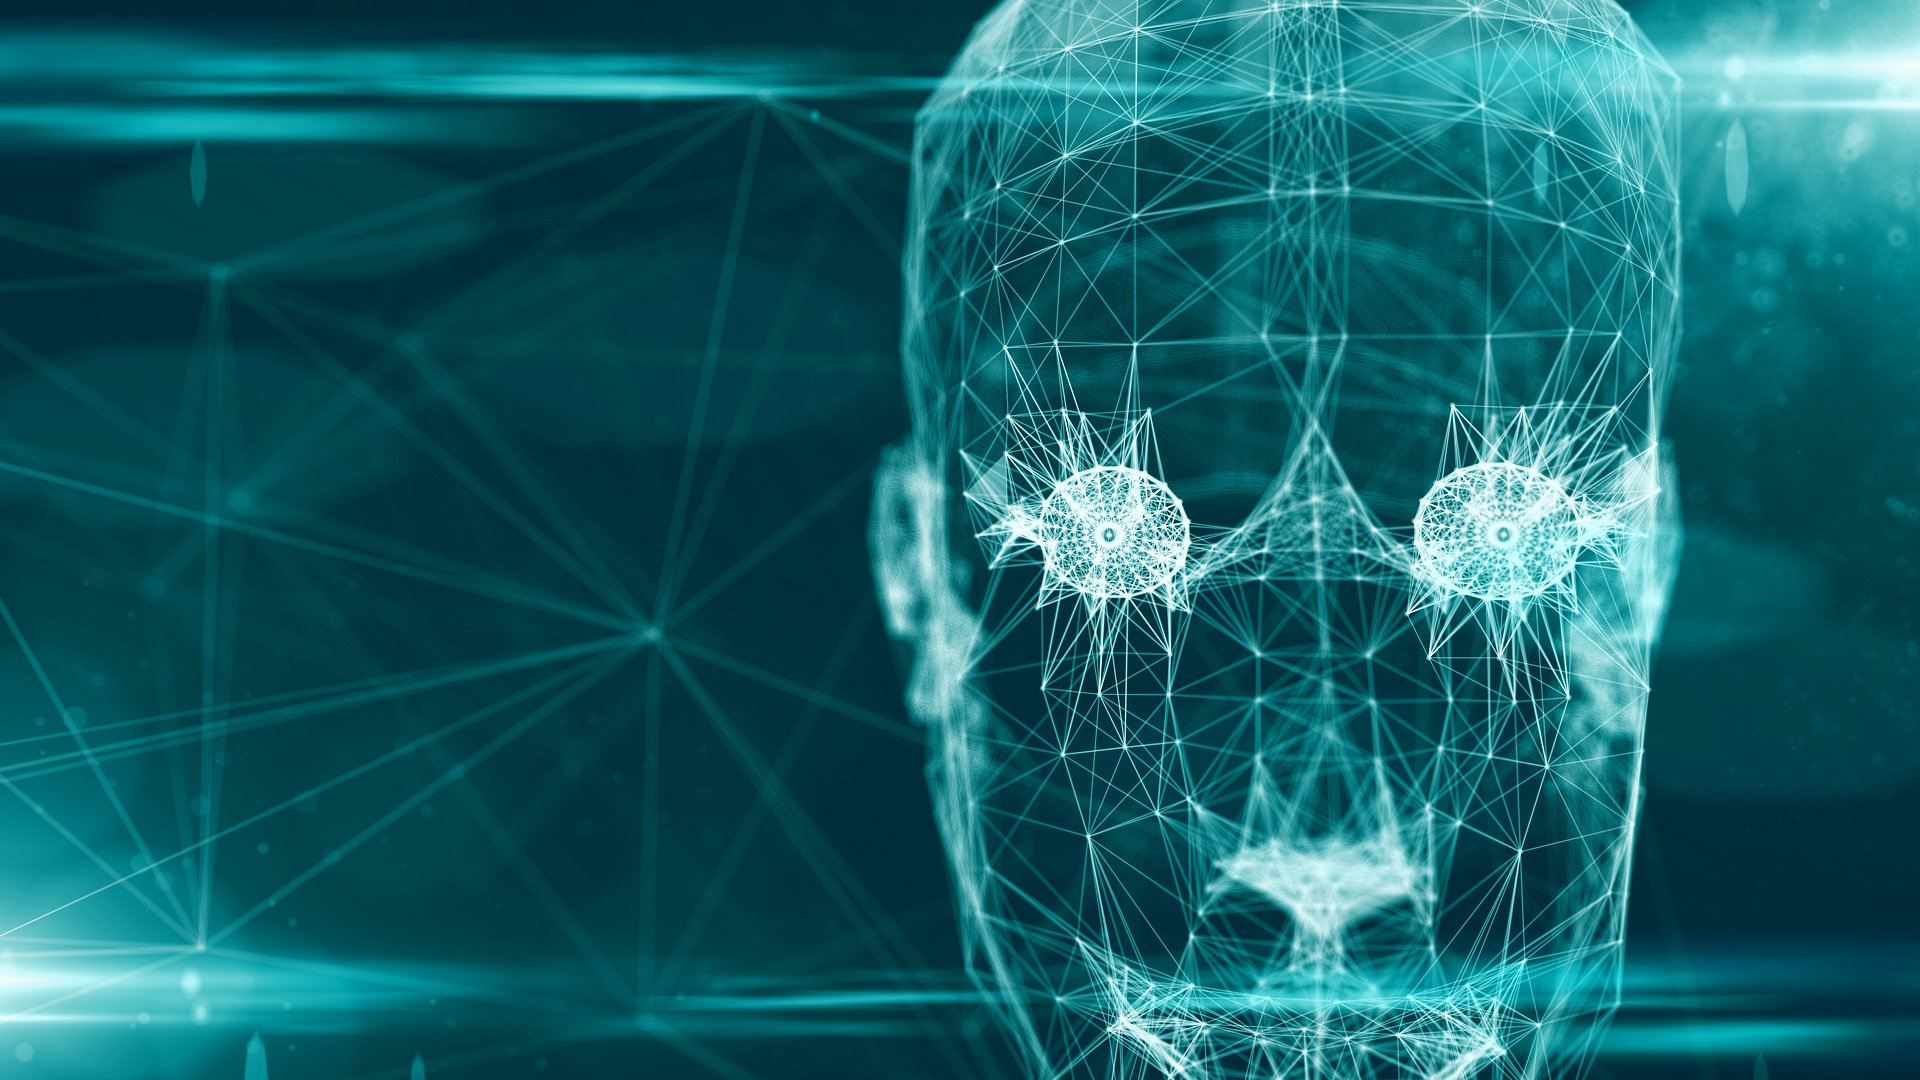 Sztuczna inteligencja w 2019 roku: już Terminator czy jeszcze nie?